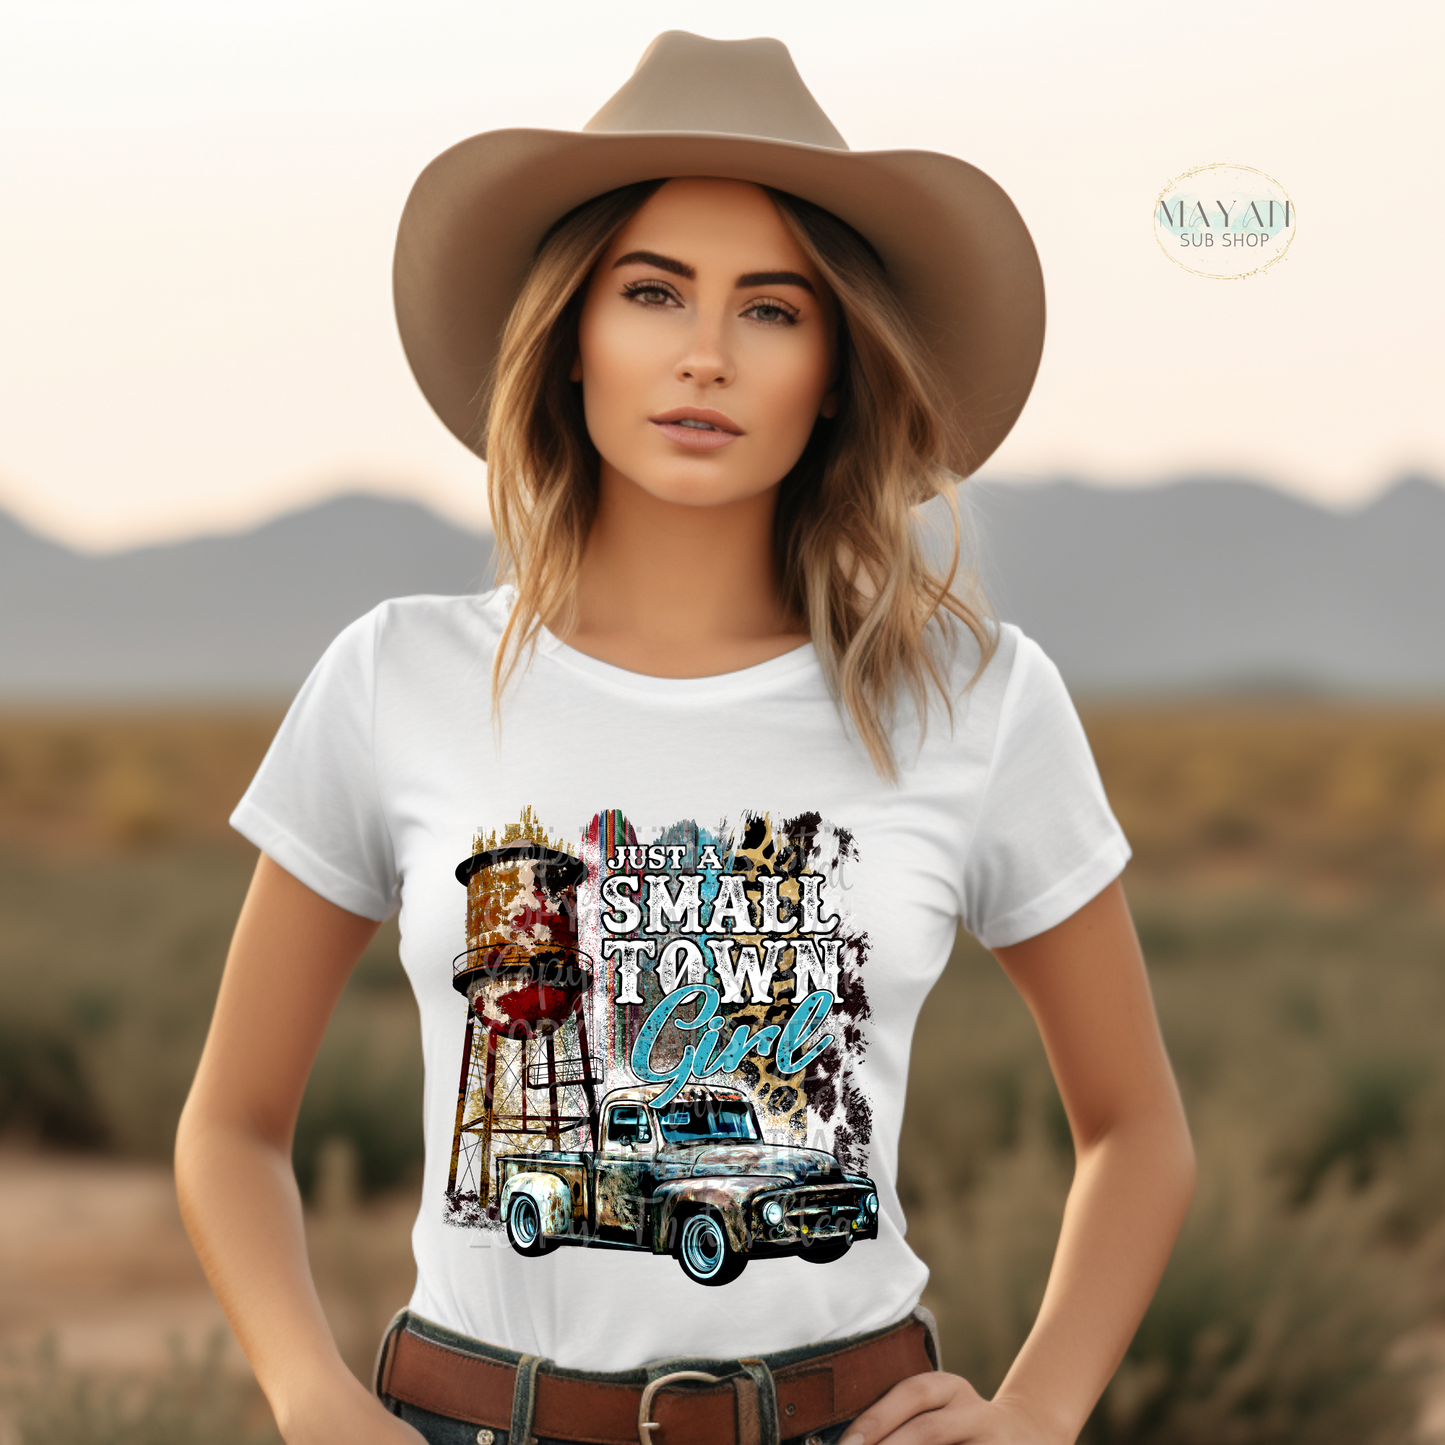 Just a small town girl shirt. -Mayan Sub Shop